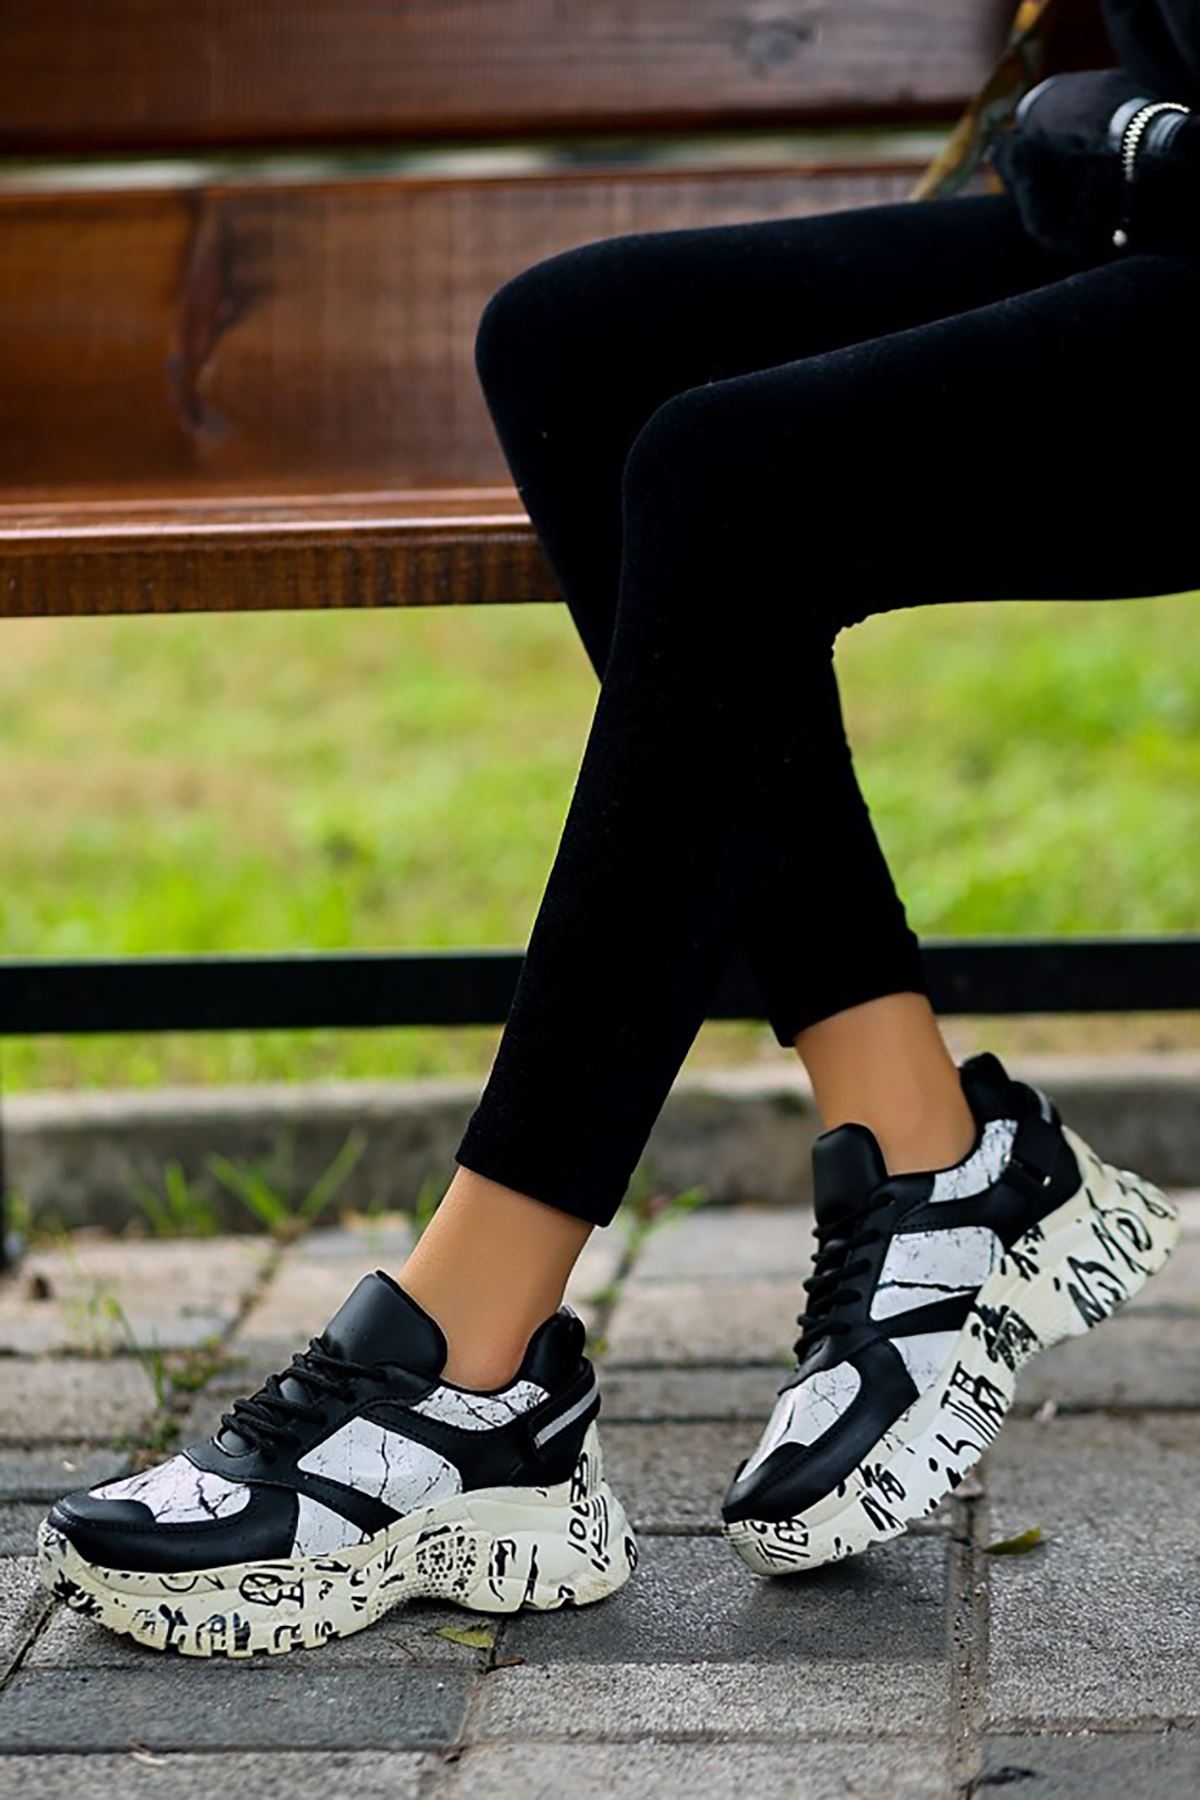 ERBFUNİE Siyah Beyaz Deri Bayan Detaylı Bağcıklı Spor Ayakkabı